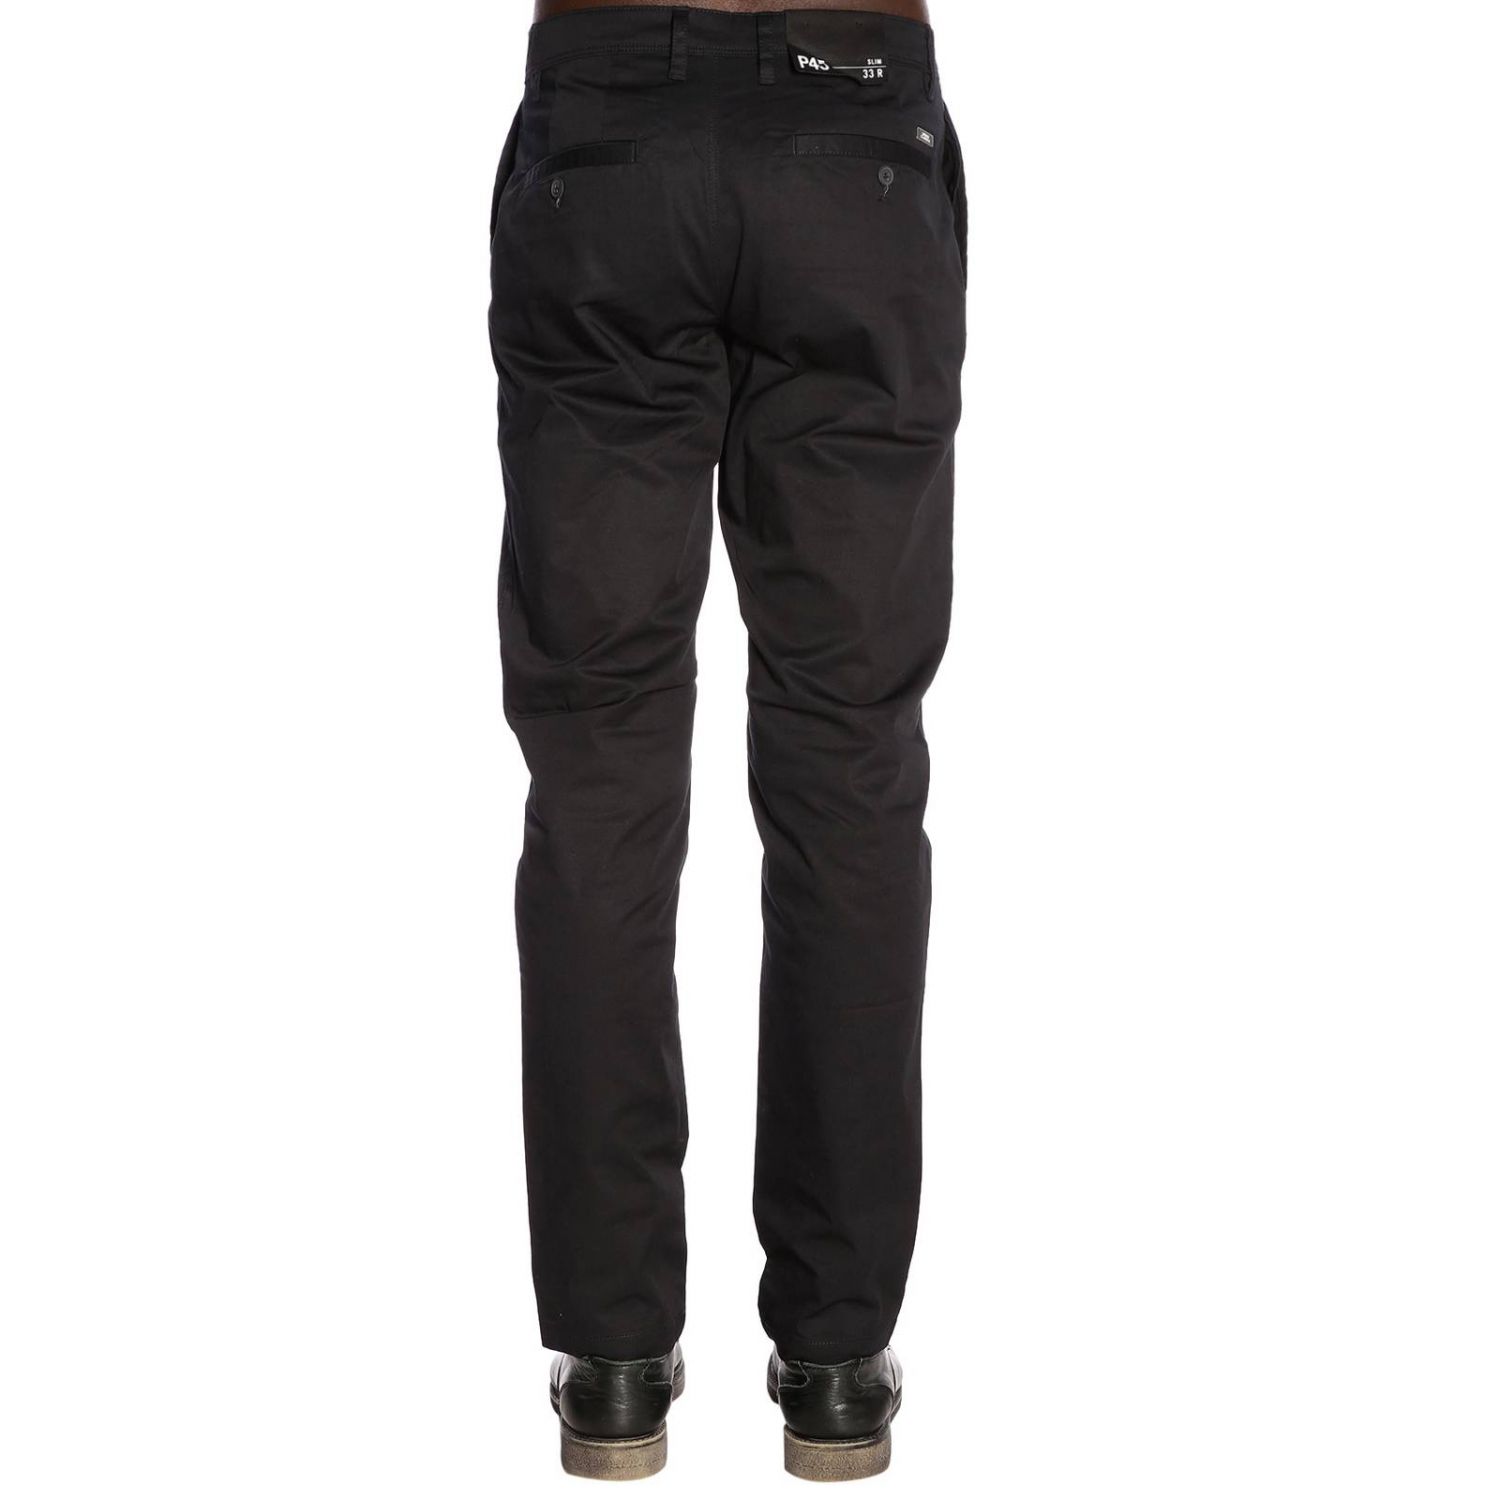 Armani Exchange Outlet: Pants men - Black | Pants Armani Exchange ...